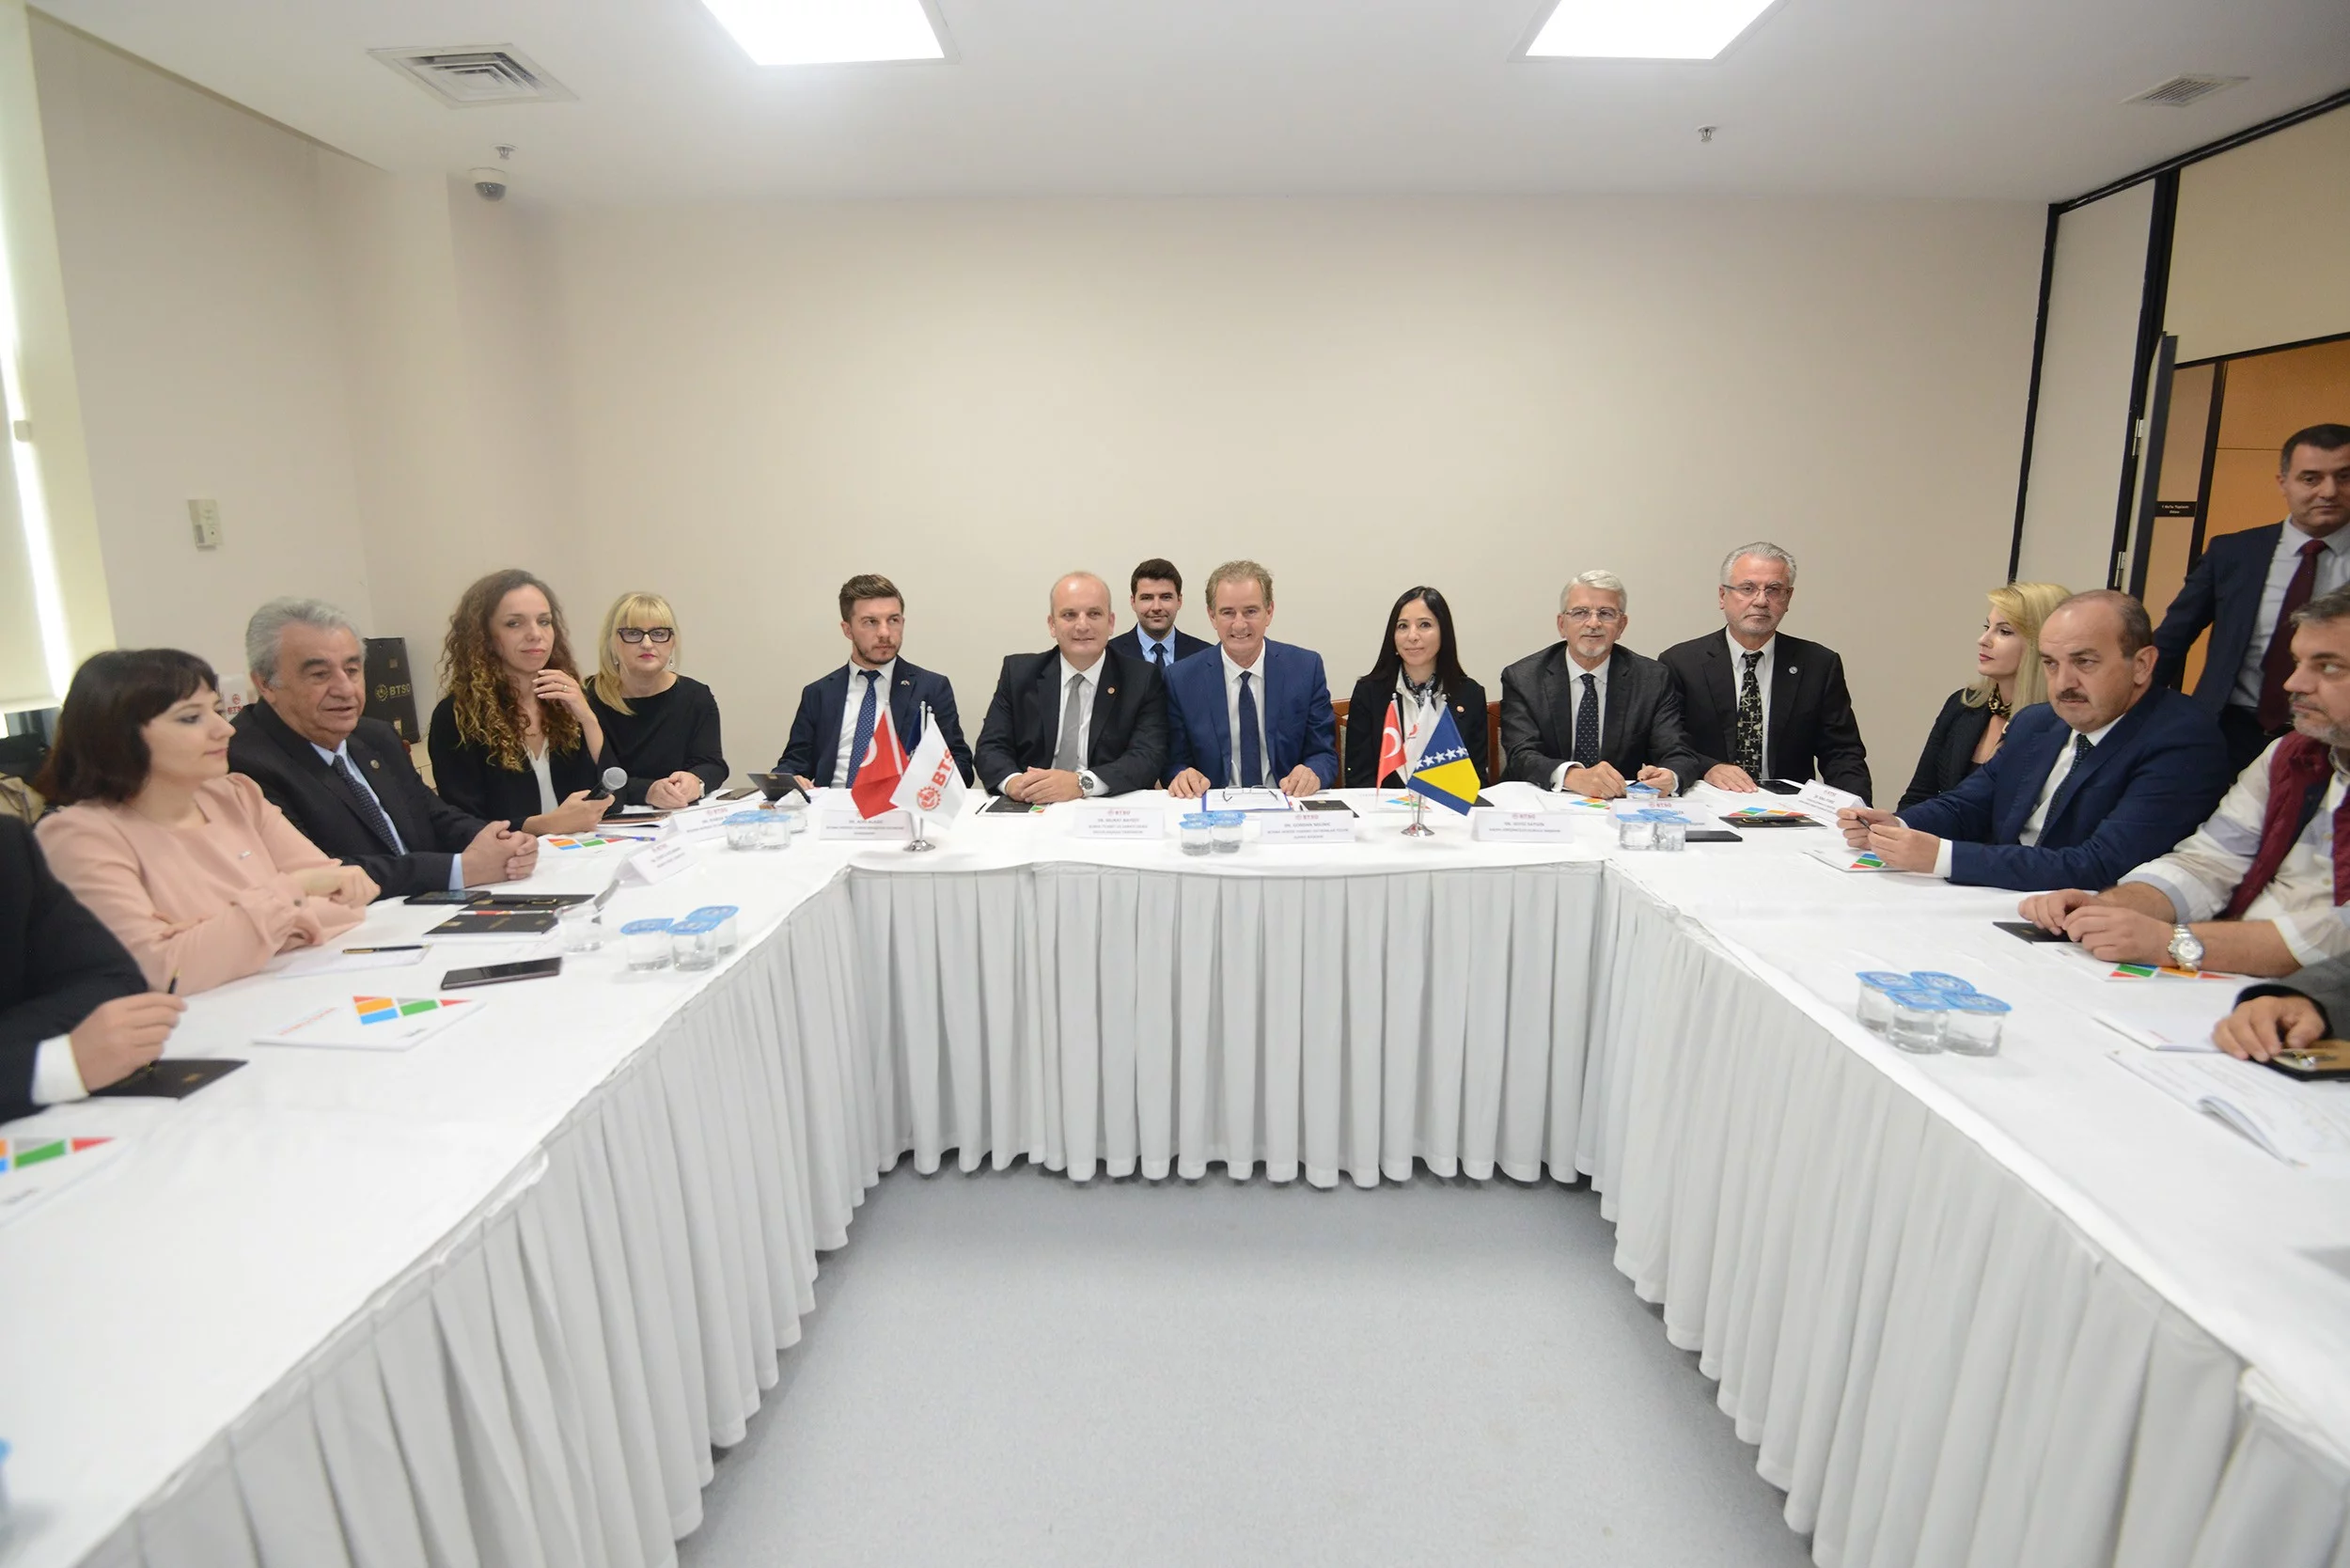 Bosna Hersek Yatırım Ajansı iş birliği için Bursa'ya geldi